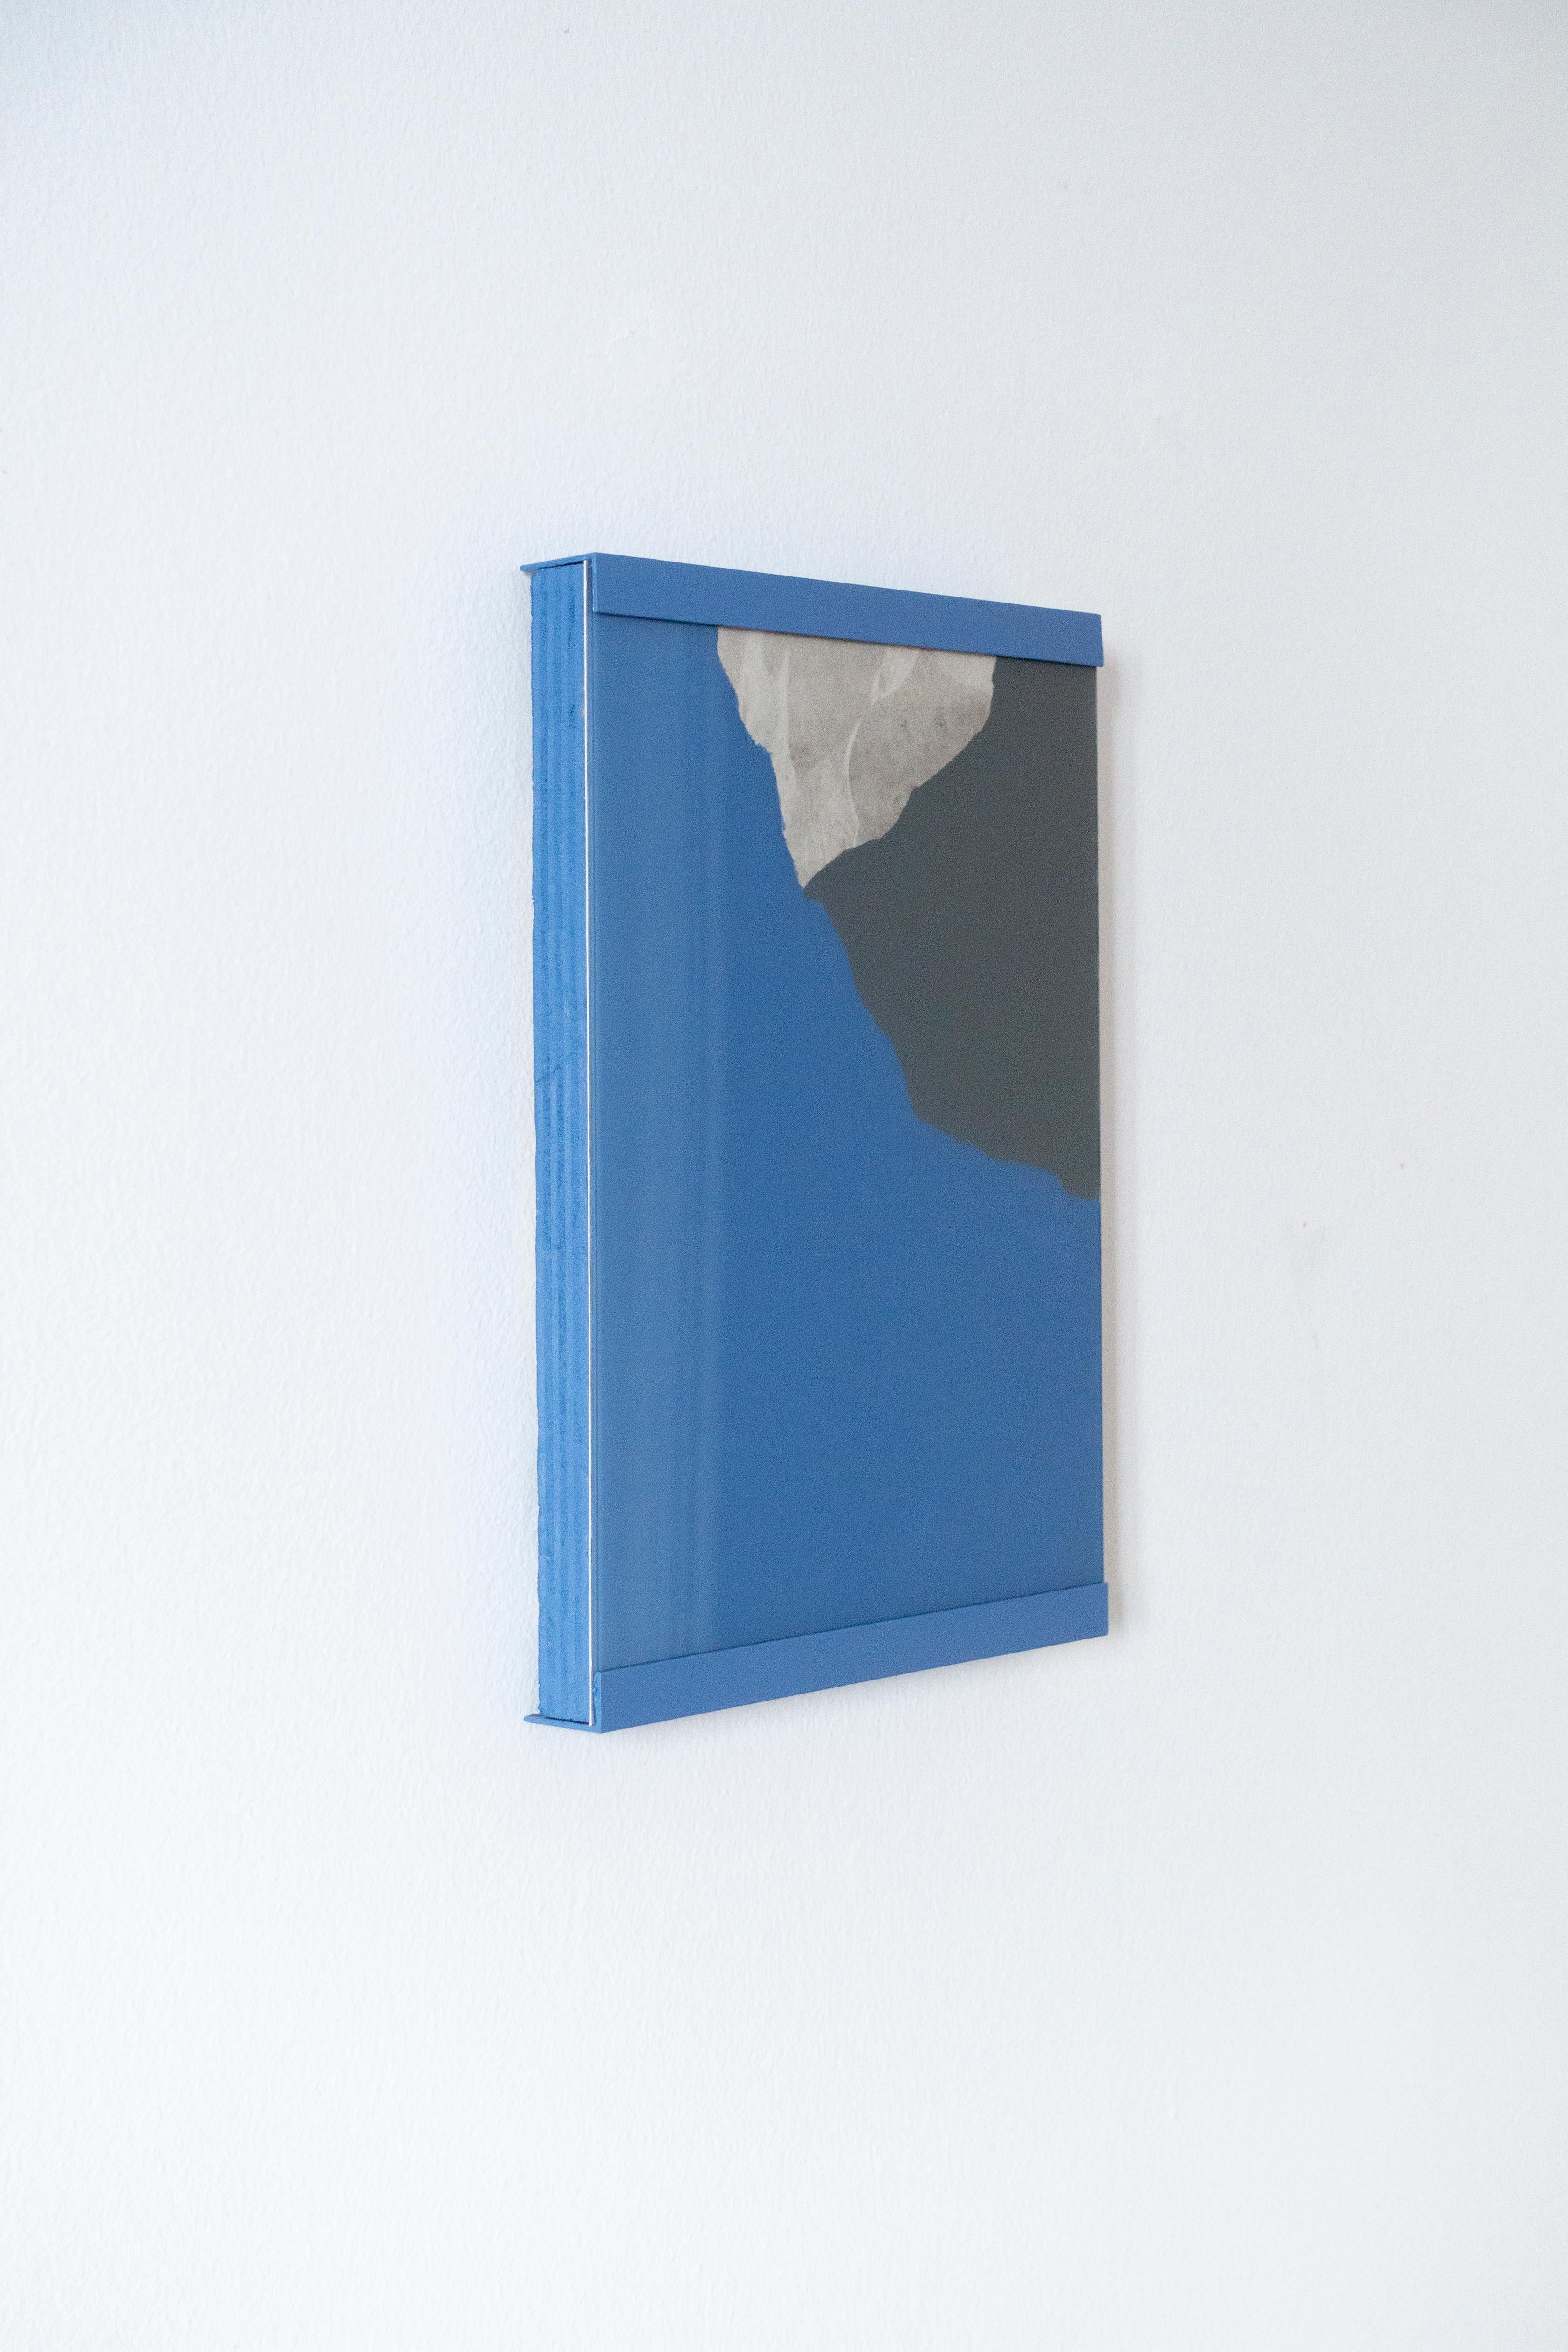 Primo riflesso grigio azzurro - Painting by Marco Tagliafico